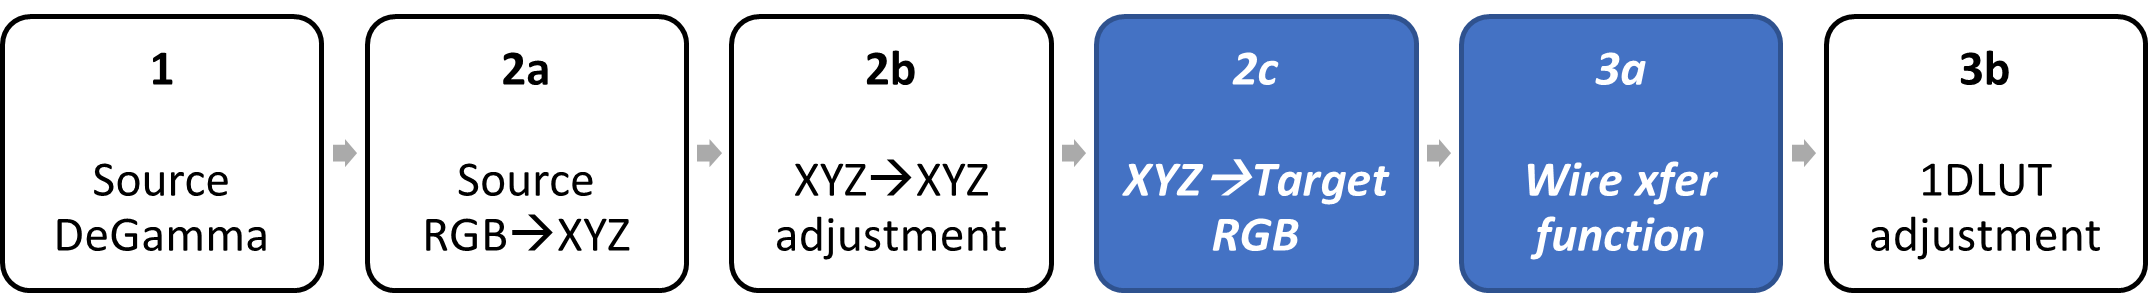 diagrama de bloques que identifica xyz para las fases de función rgb y de transferencia bancaria de destino